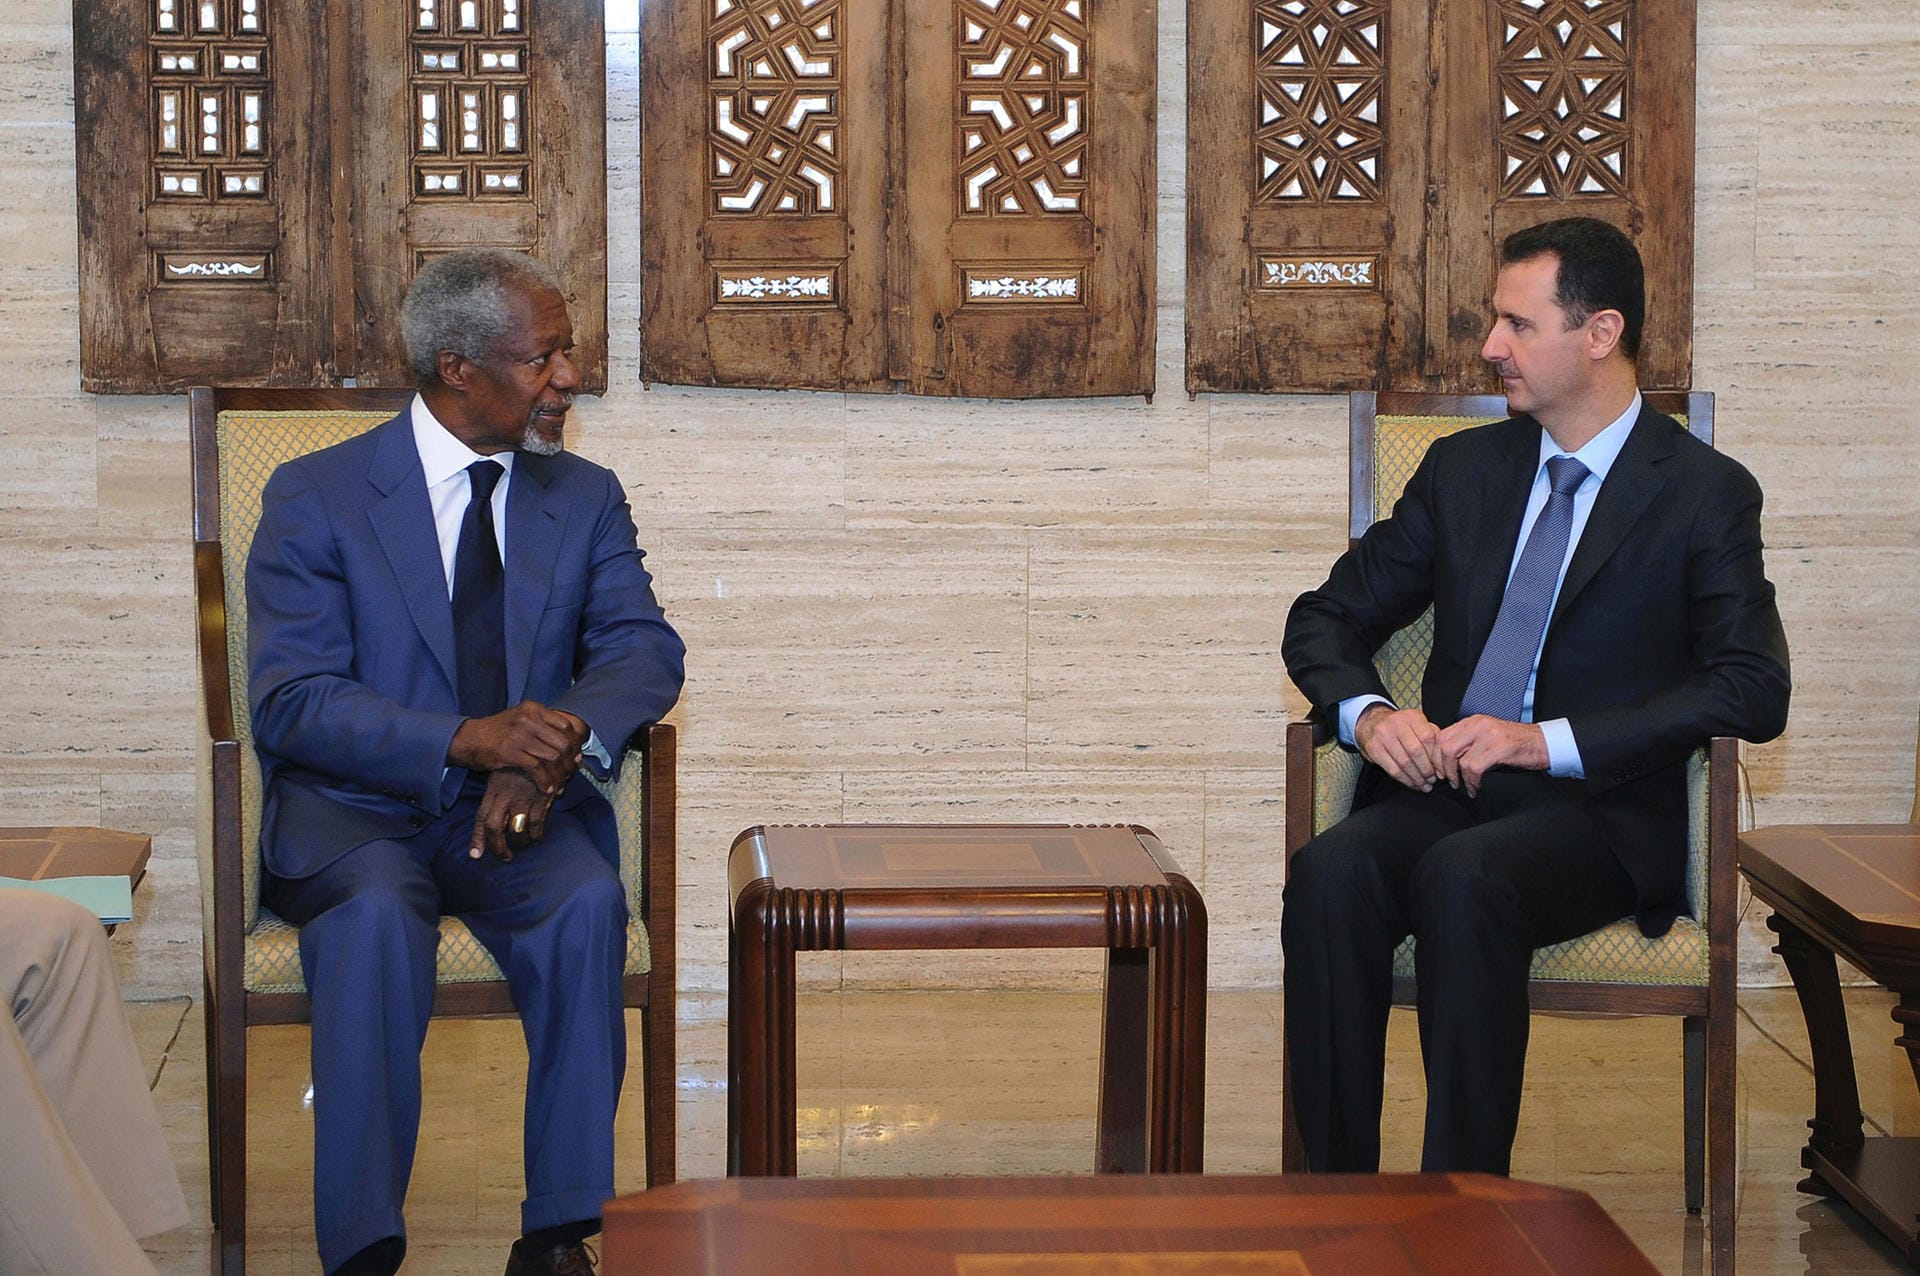 Ab März 2012 war Annan Sondergesandter der Vereinten Nationen und der Arabischen Liga für Syrien. Annan versuchte in der Syrien-Krise zu vermitteln. Am August trat er jedoch wegen "mangelnder Unterstützung" zurück. Das Foto zeigt ihm mit dem syrischen Präsidenten Baschar al-Assad im Juli 2012.